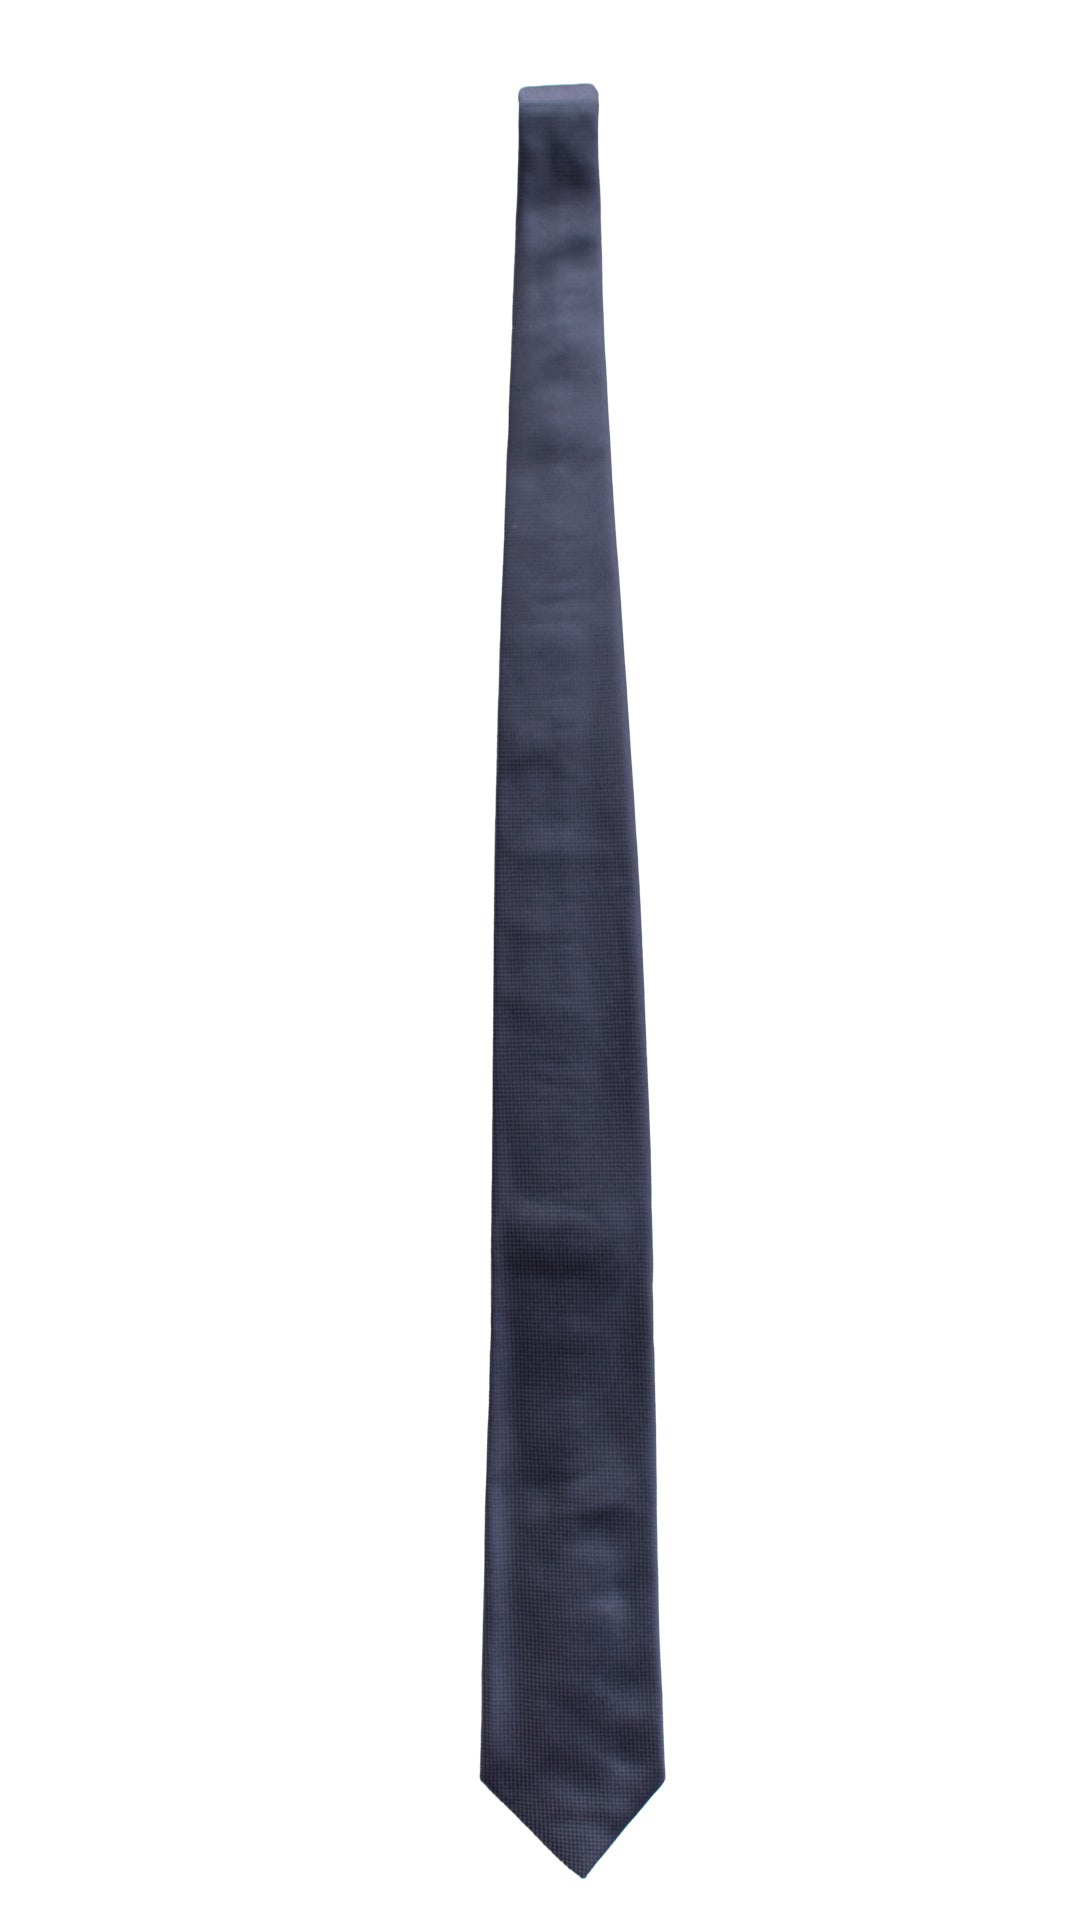 Cravatta da Cerimonia di Seta Blu Navy Grigia CY6612 Intera